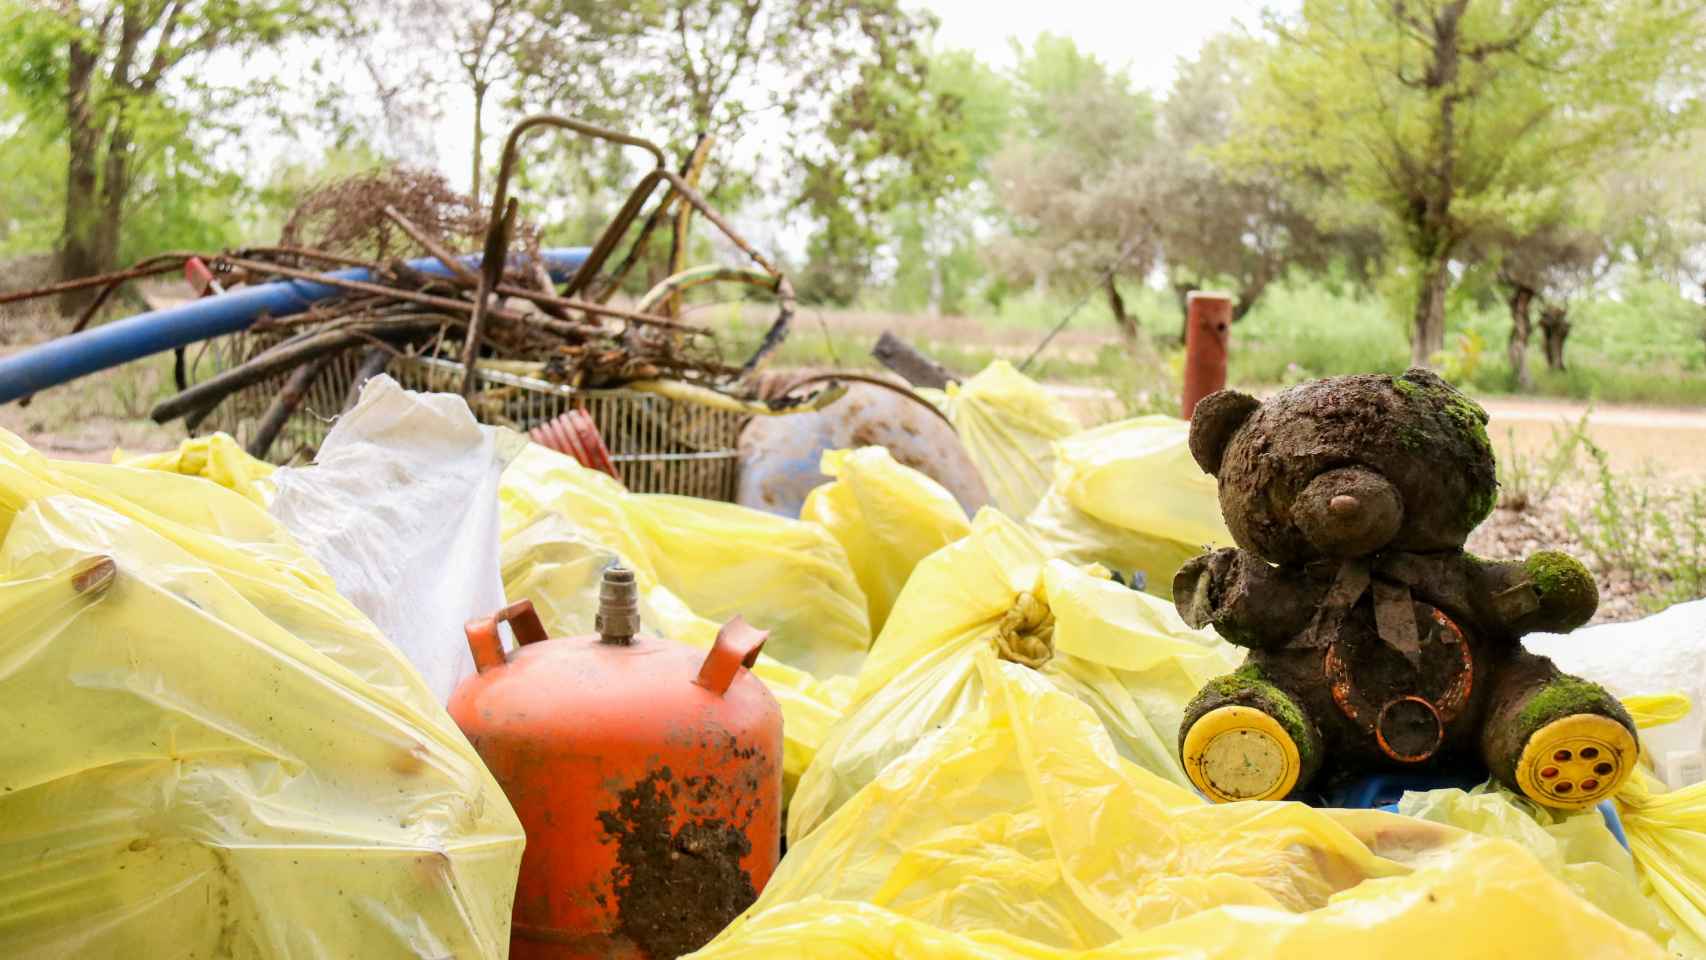 Toneladas de basura inundan el río Jarama: Un día hasta encontramos bolsas llenas de marihuana